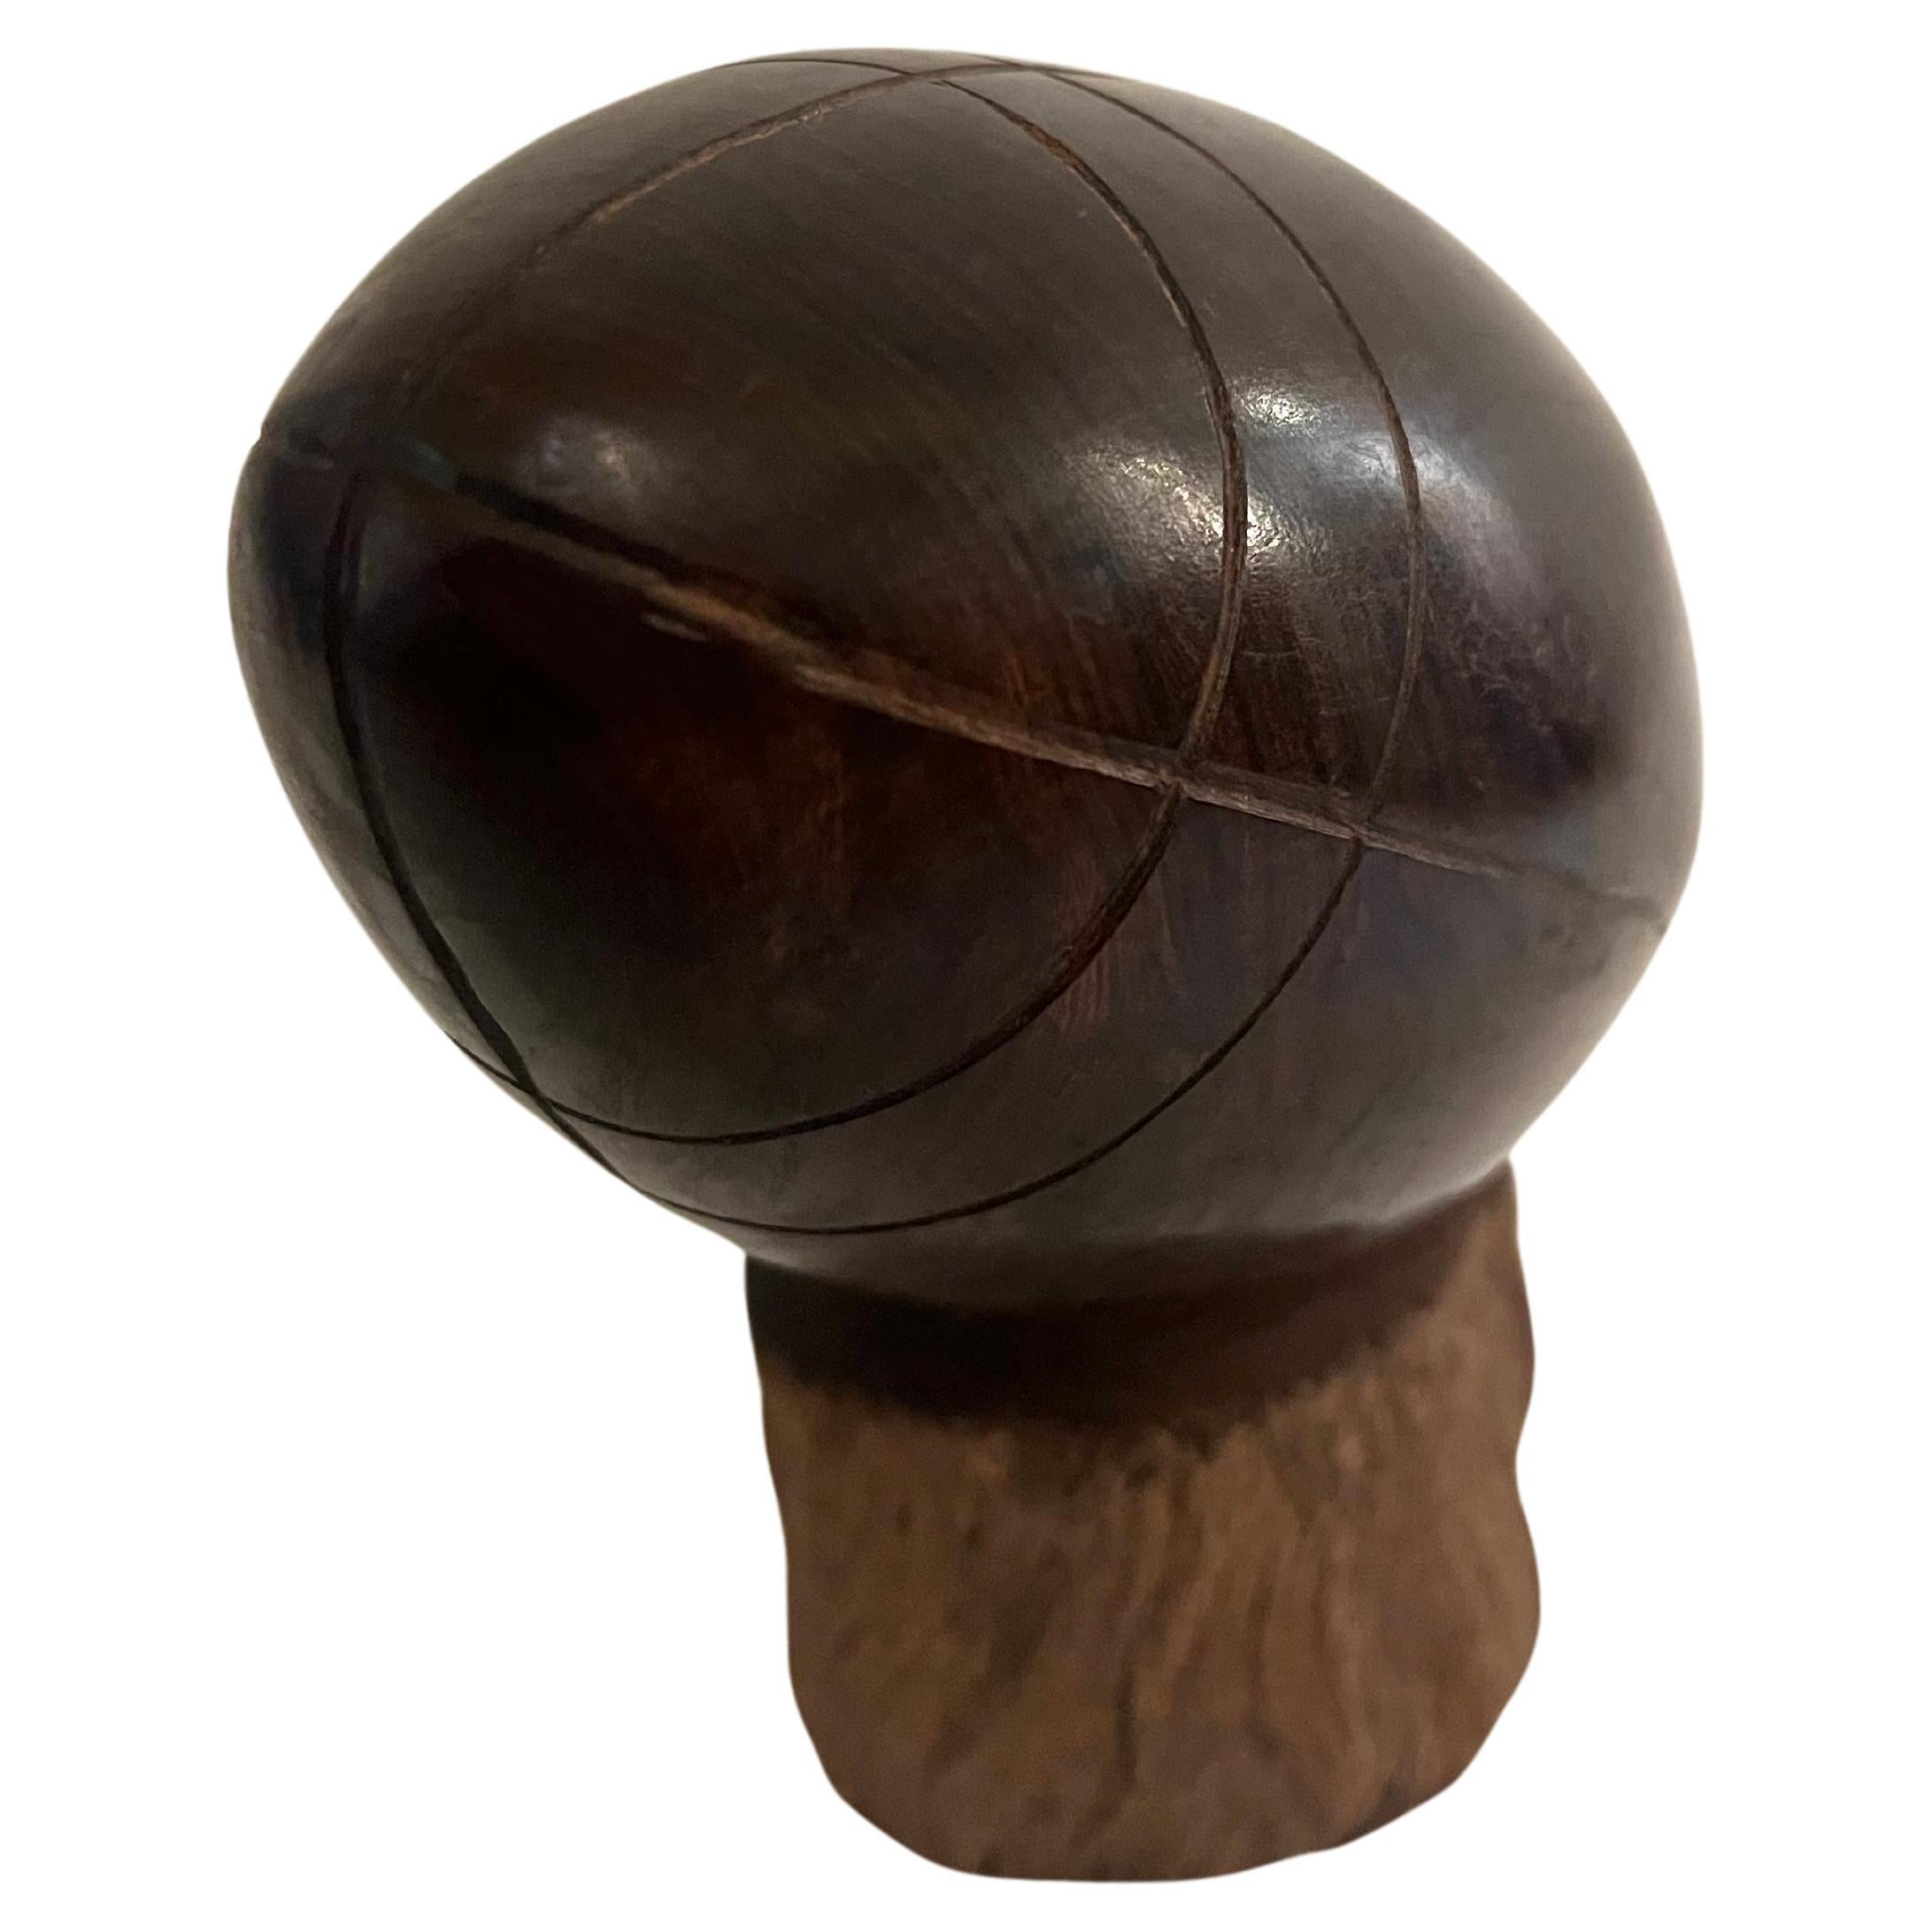 Magnifique ballon de football en bois de fer massif sculpté à la main vers les années 1970. Très bon état de conservation, ballon poli posé sur un piédestal, un classique des souvenirs américains.